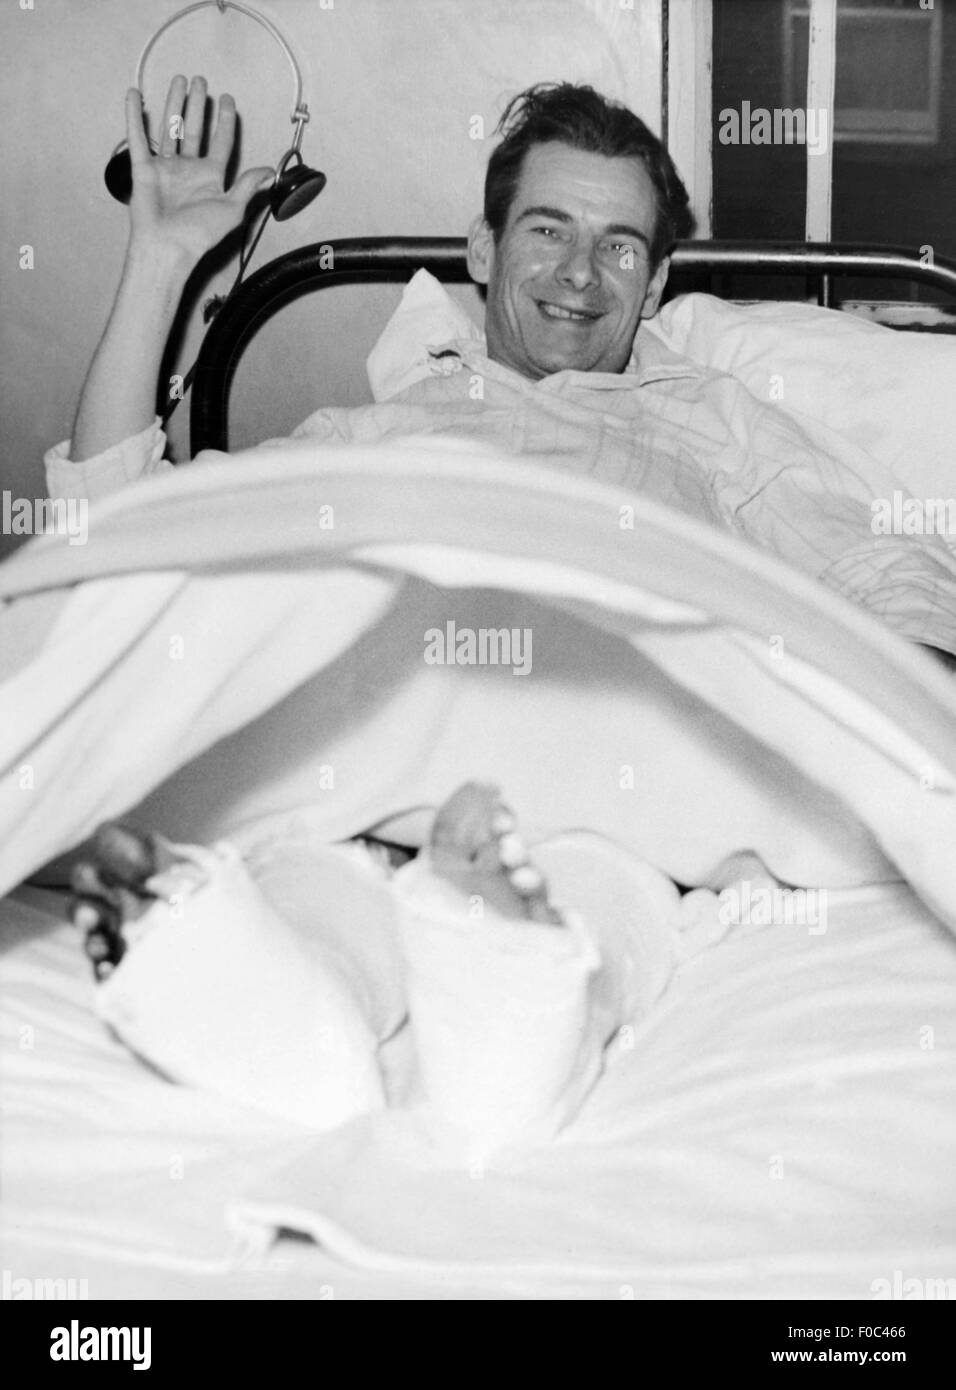 Médecine, accidents, Alfred Margetts, survivant d'un accident de train avec neuf morts, couché avec des jambes cassées dans le lit de maladie, Dagenham, Essex, 31.1.1958, droits additionnels-Clearences-non disponible Banque D'Images